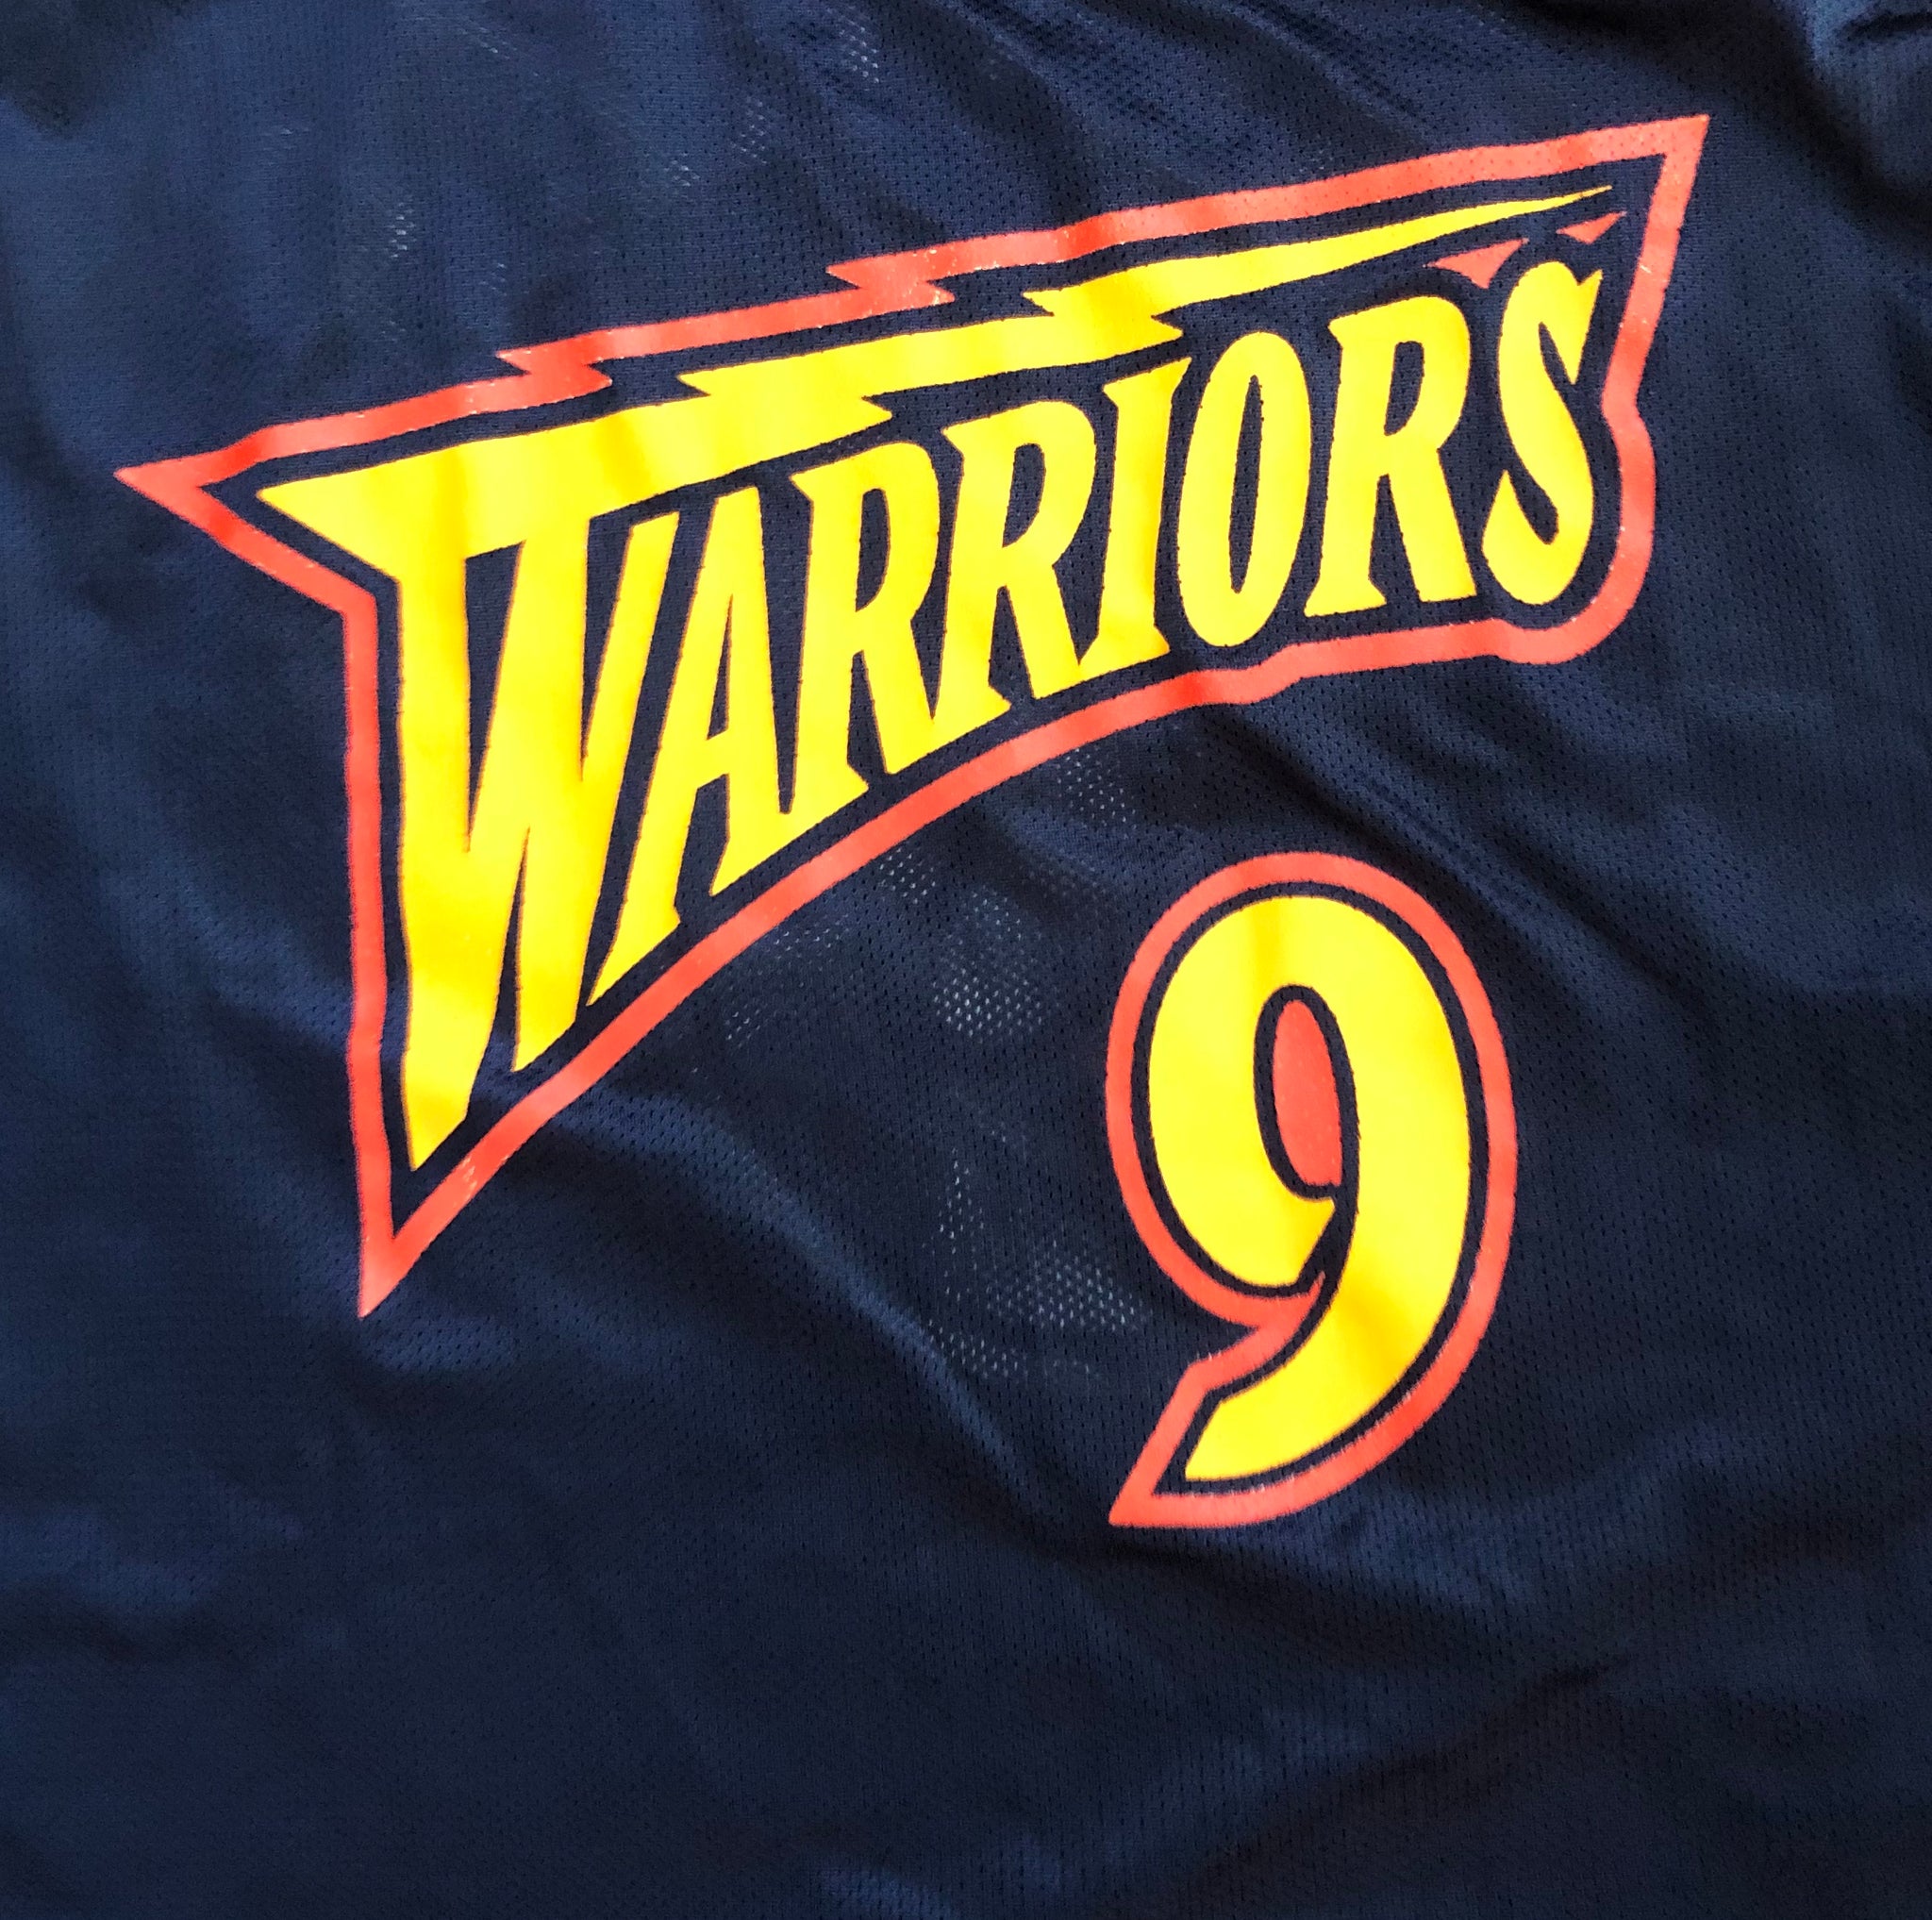 warriors 9 jersey